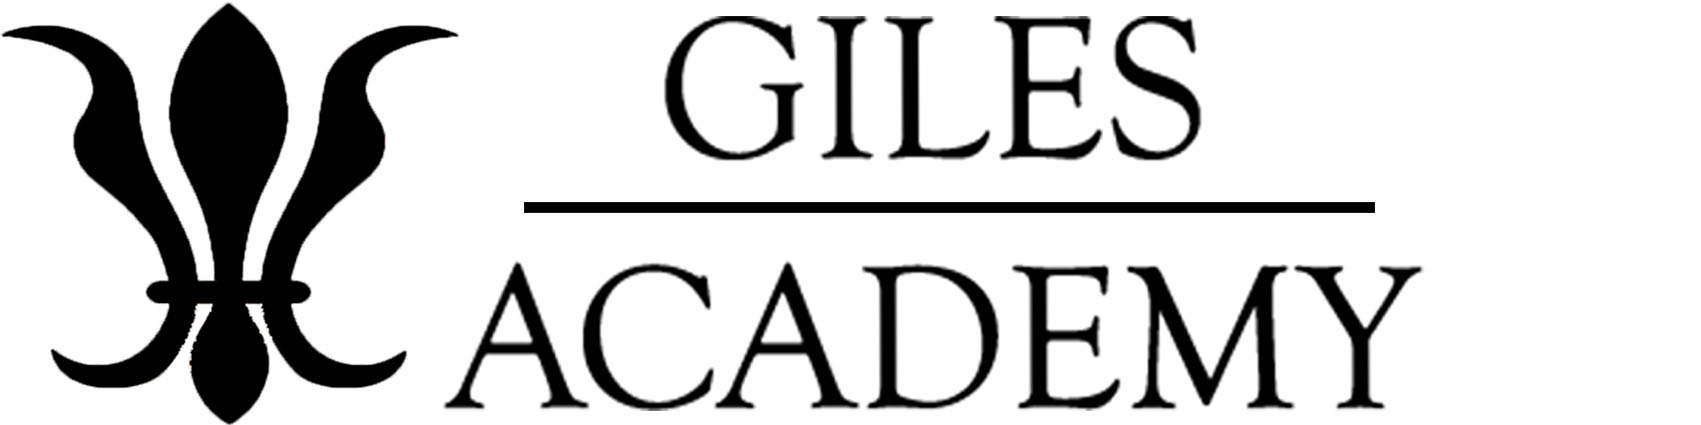 Giles Academy